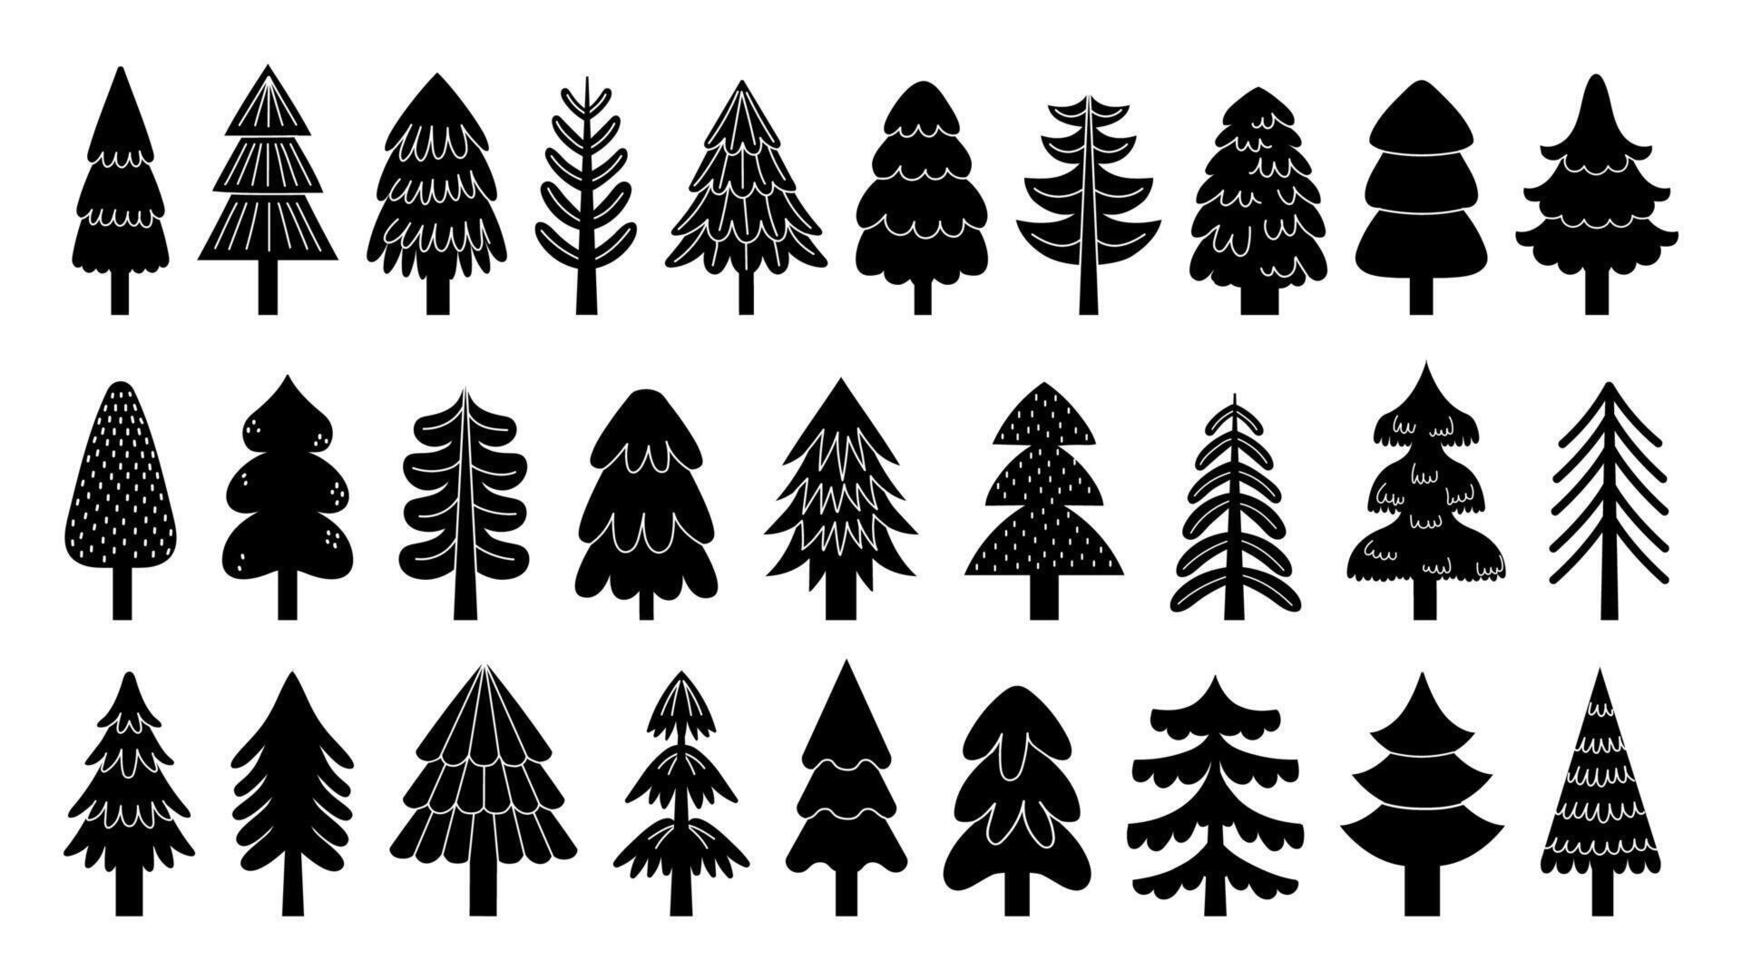 svart jul träd ikoner. minimal vinter- tall gran silhuetter med dekorationer, enkel svartvit vinter- Semester säsong teckning. vektor isolerat uppsättning